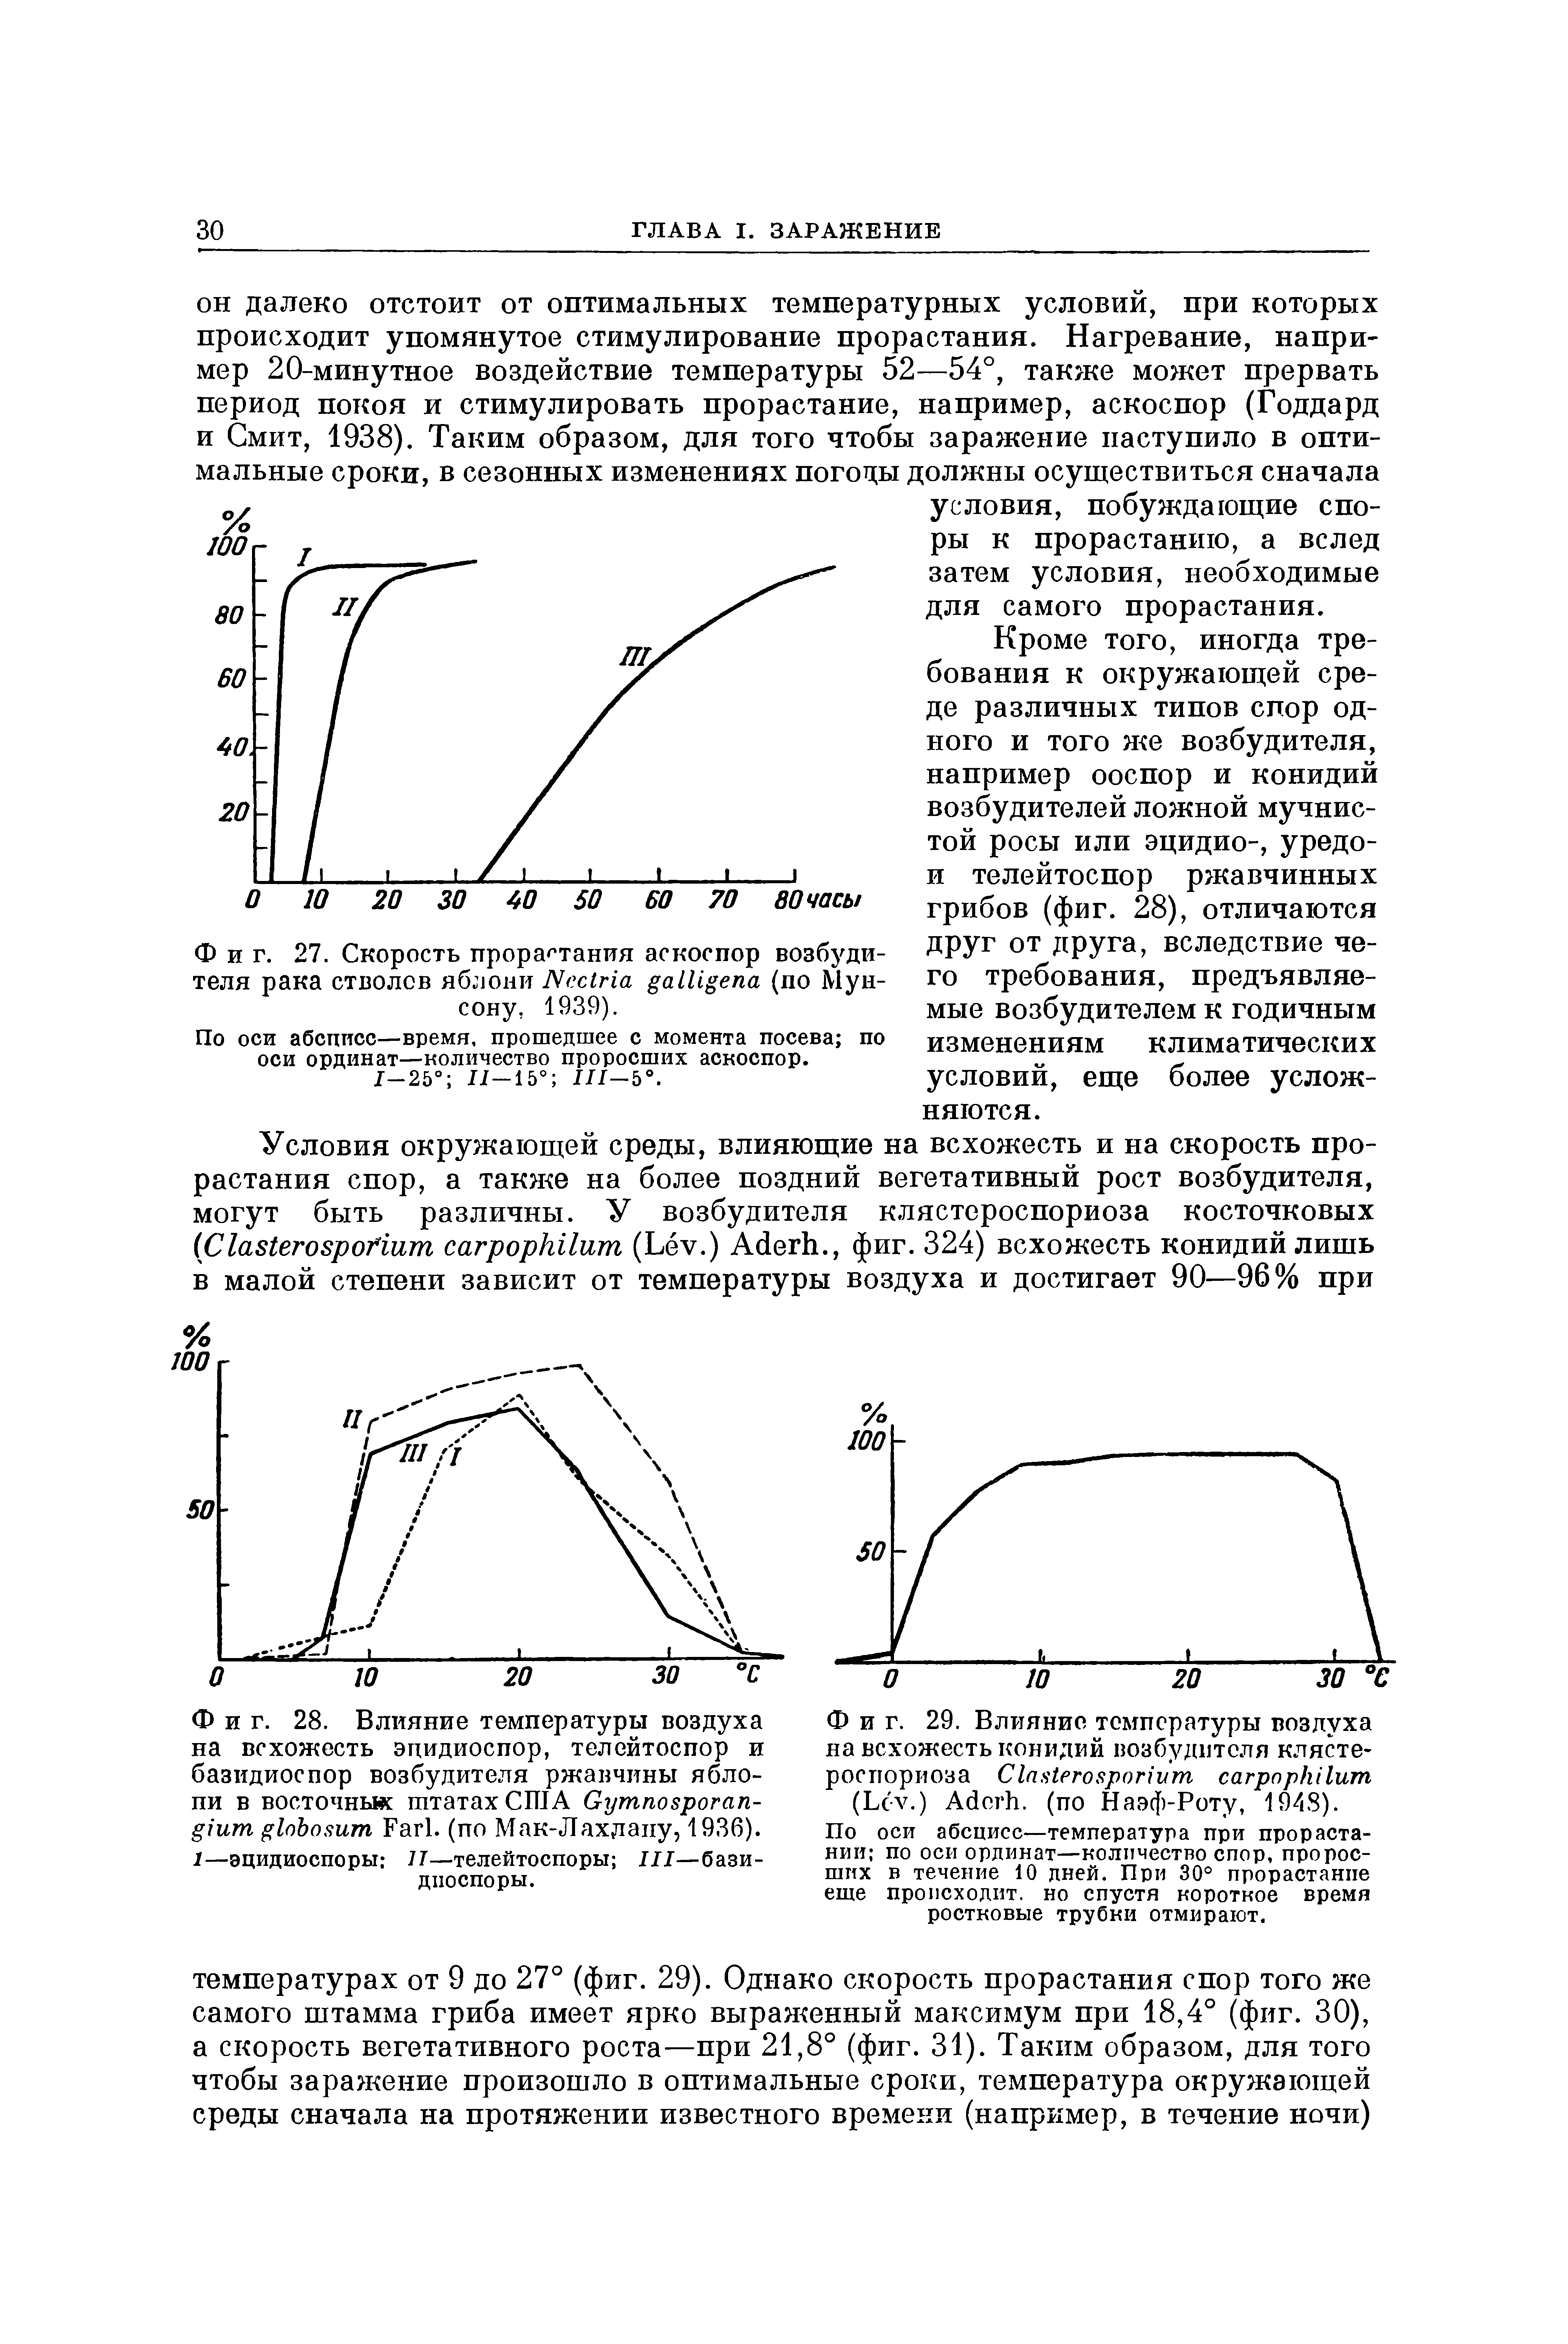 Фиг. 29. Влияние температуры воздуха на всхожесть конидий возбудителя клястероспориоза C (L .) A . (по Наэф-Роту, 1948).